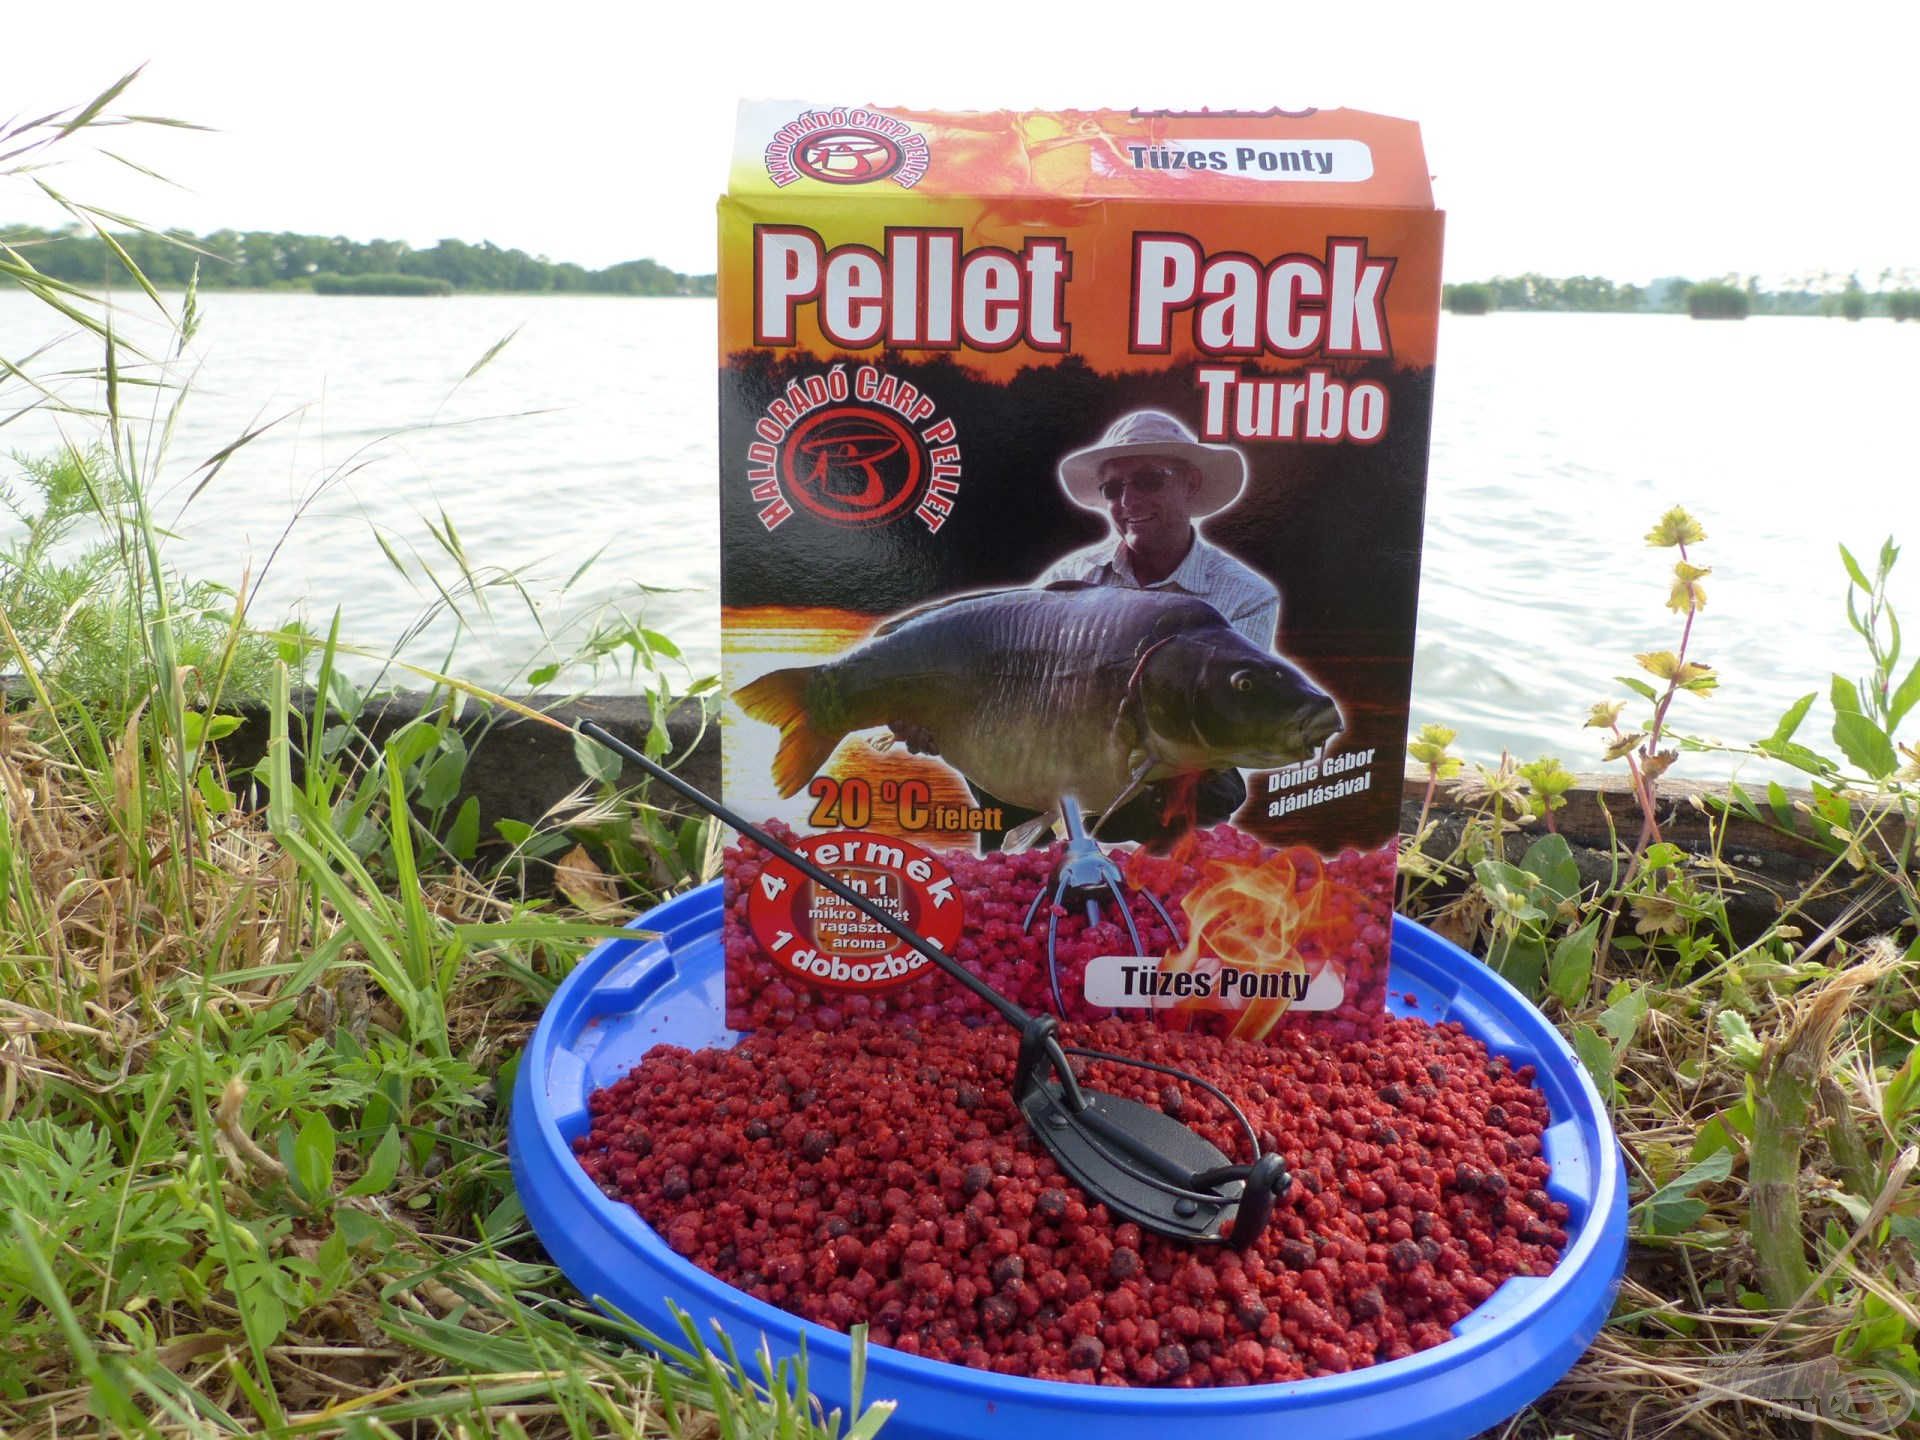 A Pellet Pack Turbo Tüzes Ponty egy igazi nagy hal „mágnes” a felmelegedett vizekben. Tökéletesen illik a Method Flat Feeder kosarakhoz